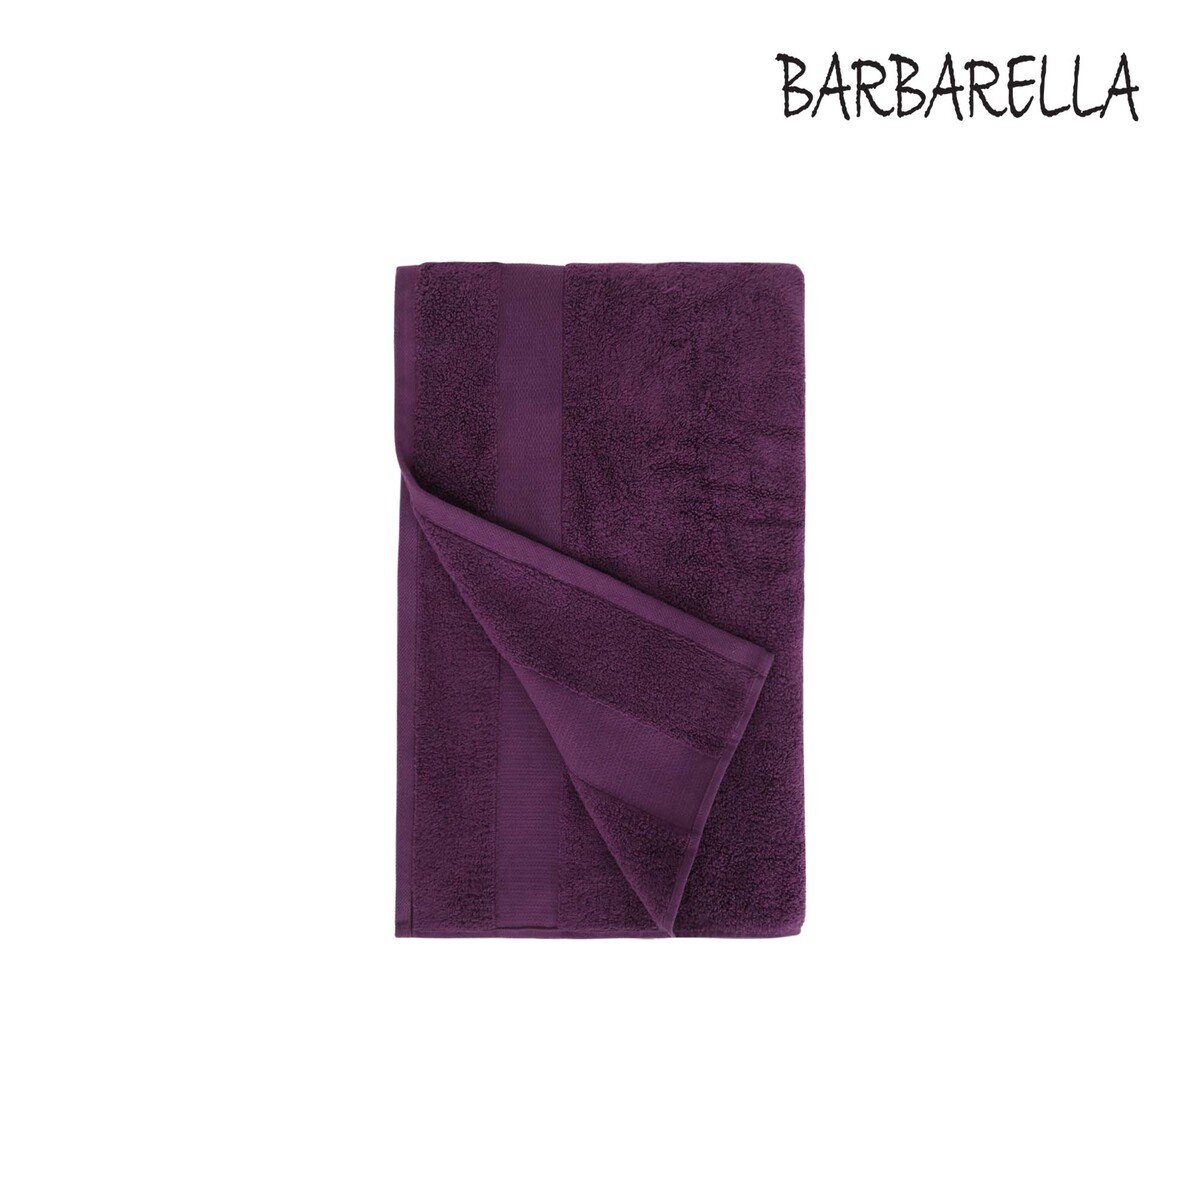 Barbarella Hand Towel Micro Cotton Purple Size: W50 x L100cm